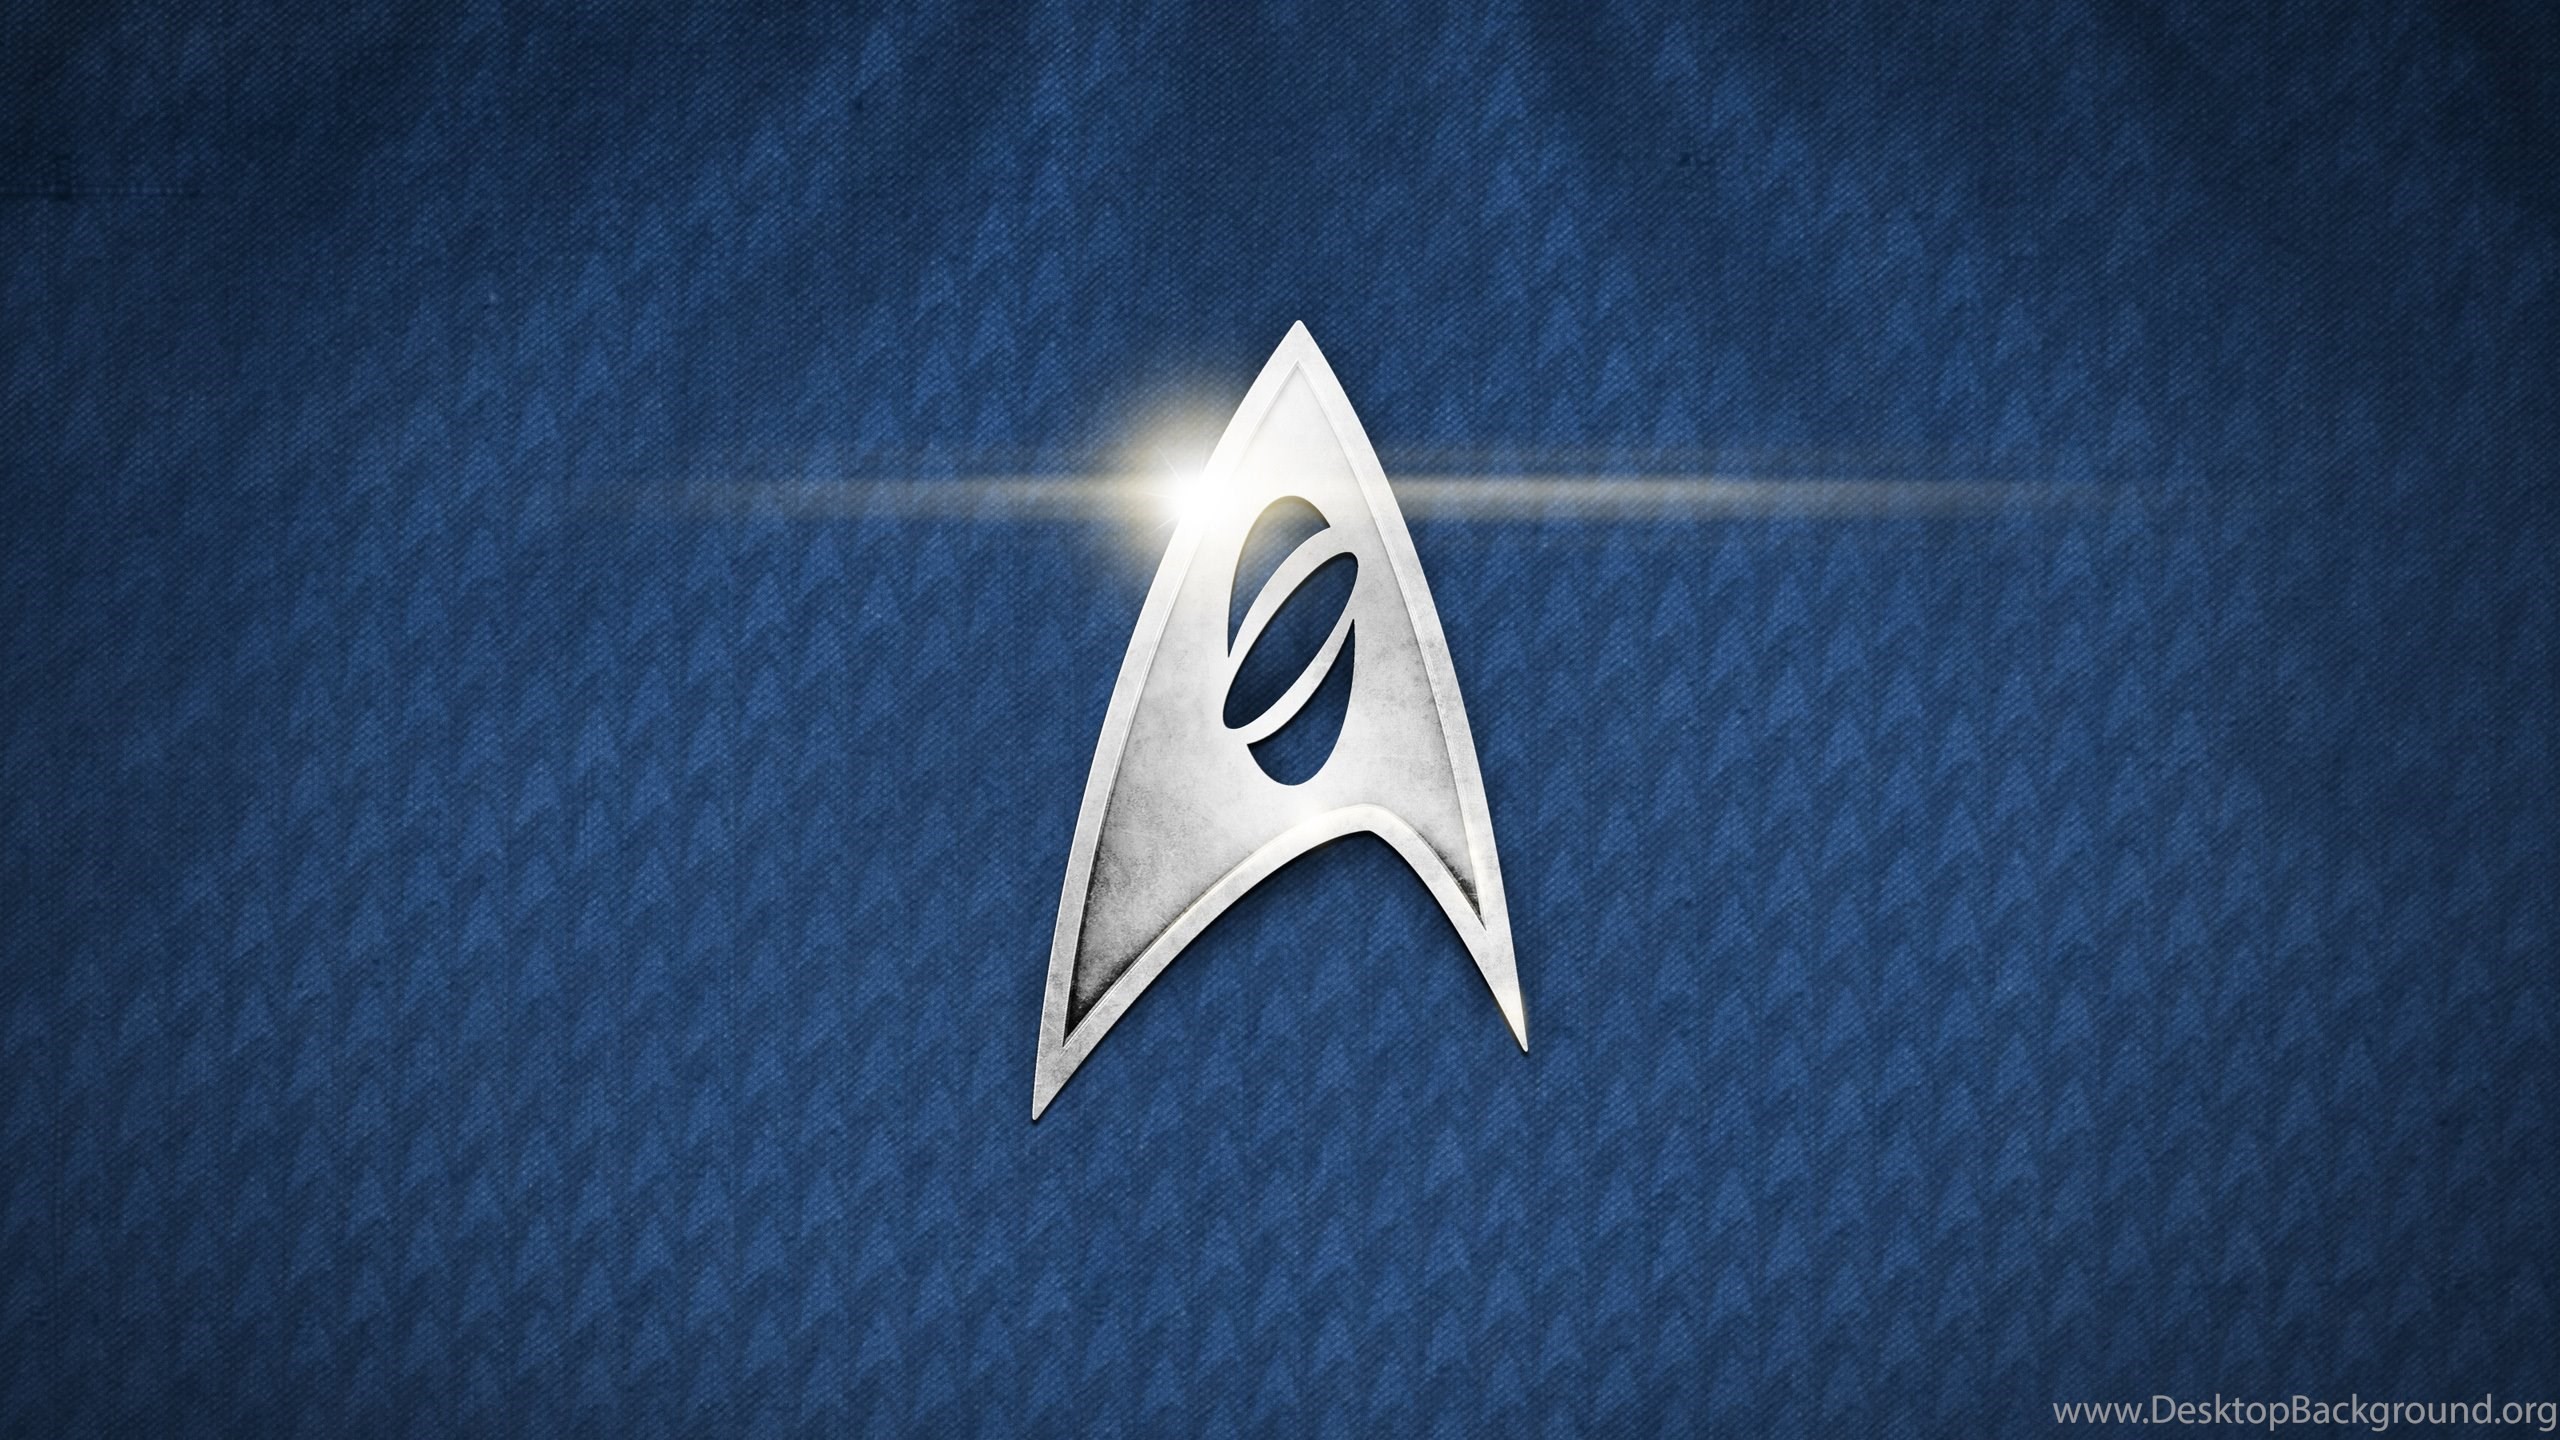 2560x1440 Star Trek Logo Cellphone Wallpaper | Newwallpapers.org